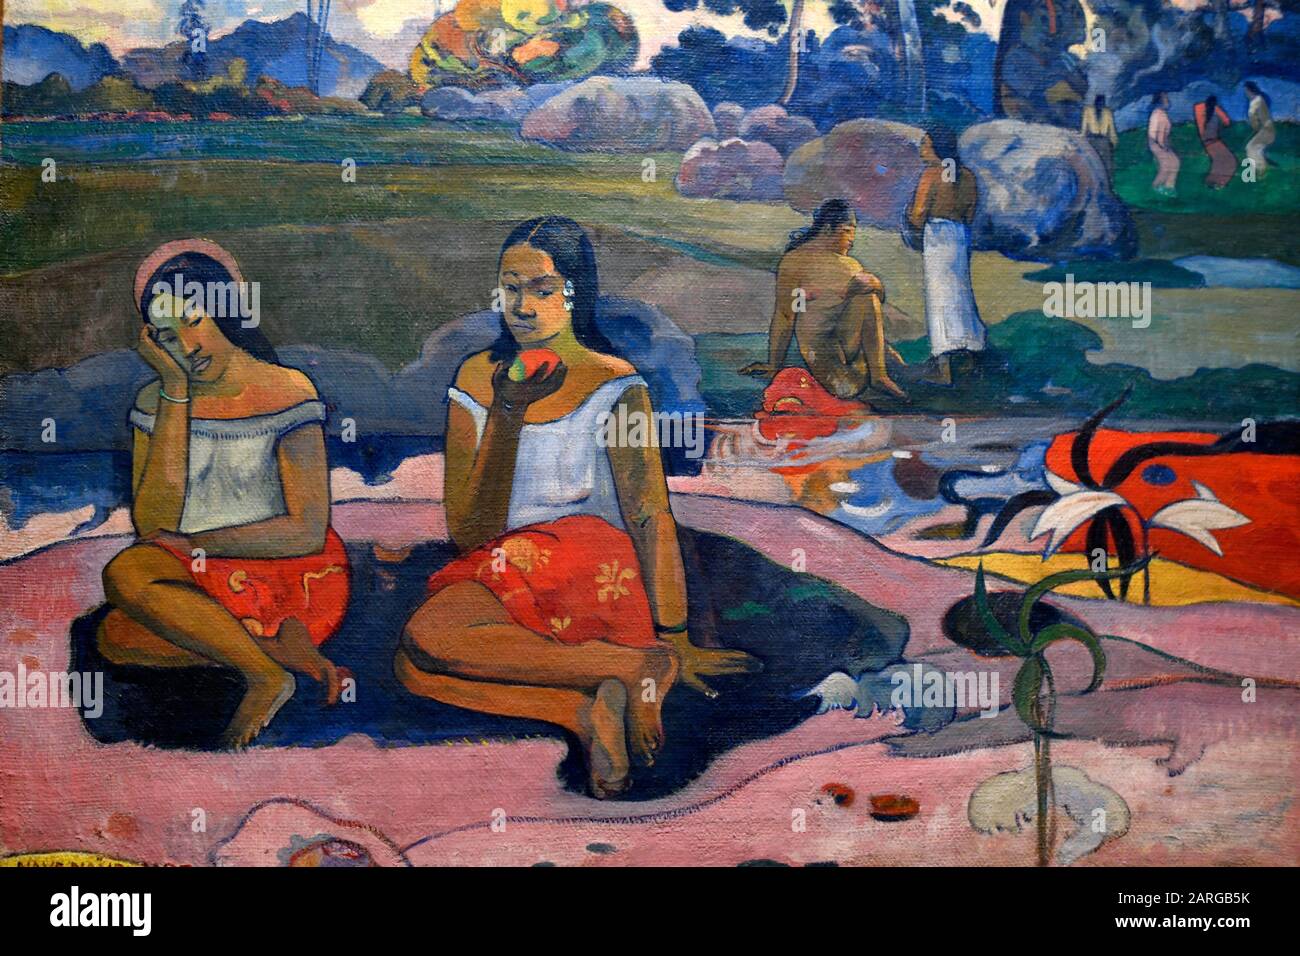 Joie de se reposer, 1894, peinture de Paul Gauguin, Musée de l'Hermitage, Saint-Pétersbourg Russie, Europe. Banque D'Images